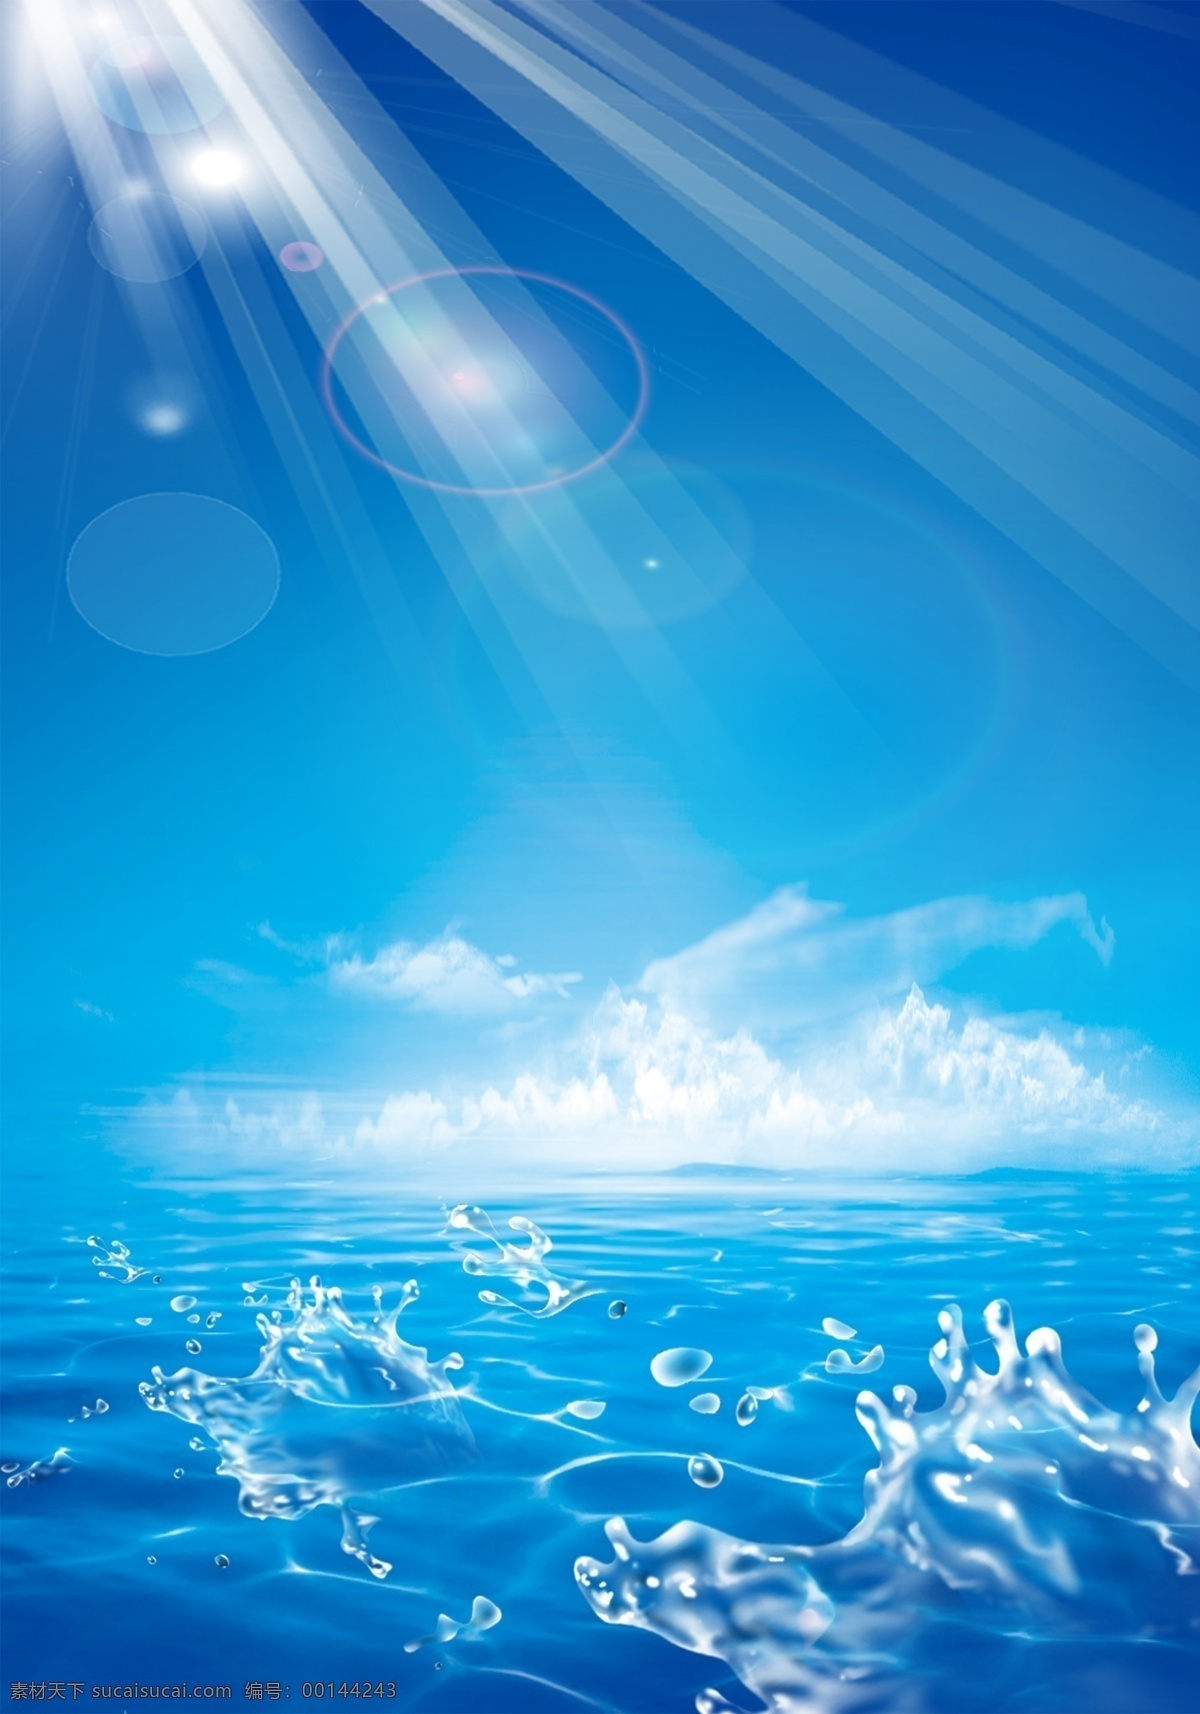 蓝色海水图片 蓝色海面图片 蓝色海面 海面 海洋 蓝色海洋 灯塔 光芒四射 光芒万丈 天空 大气 大海 海水 光芒 发光 发亮 蓝色 倒影 沙滩 夏天 风景 分层 源文件